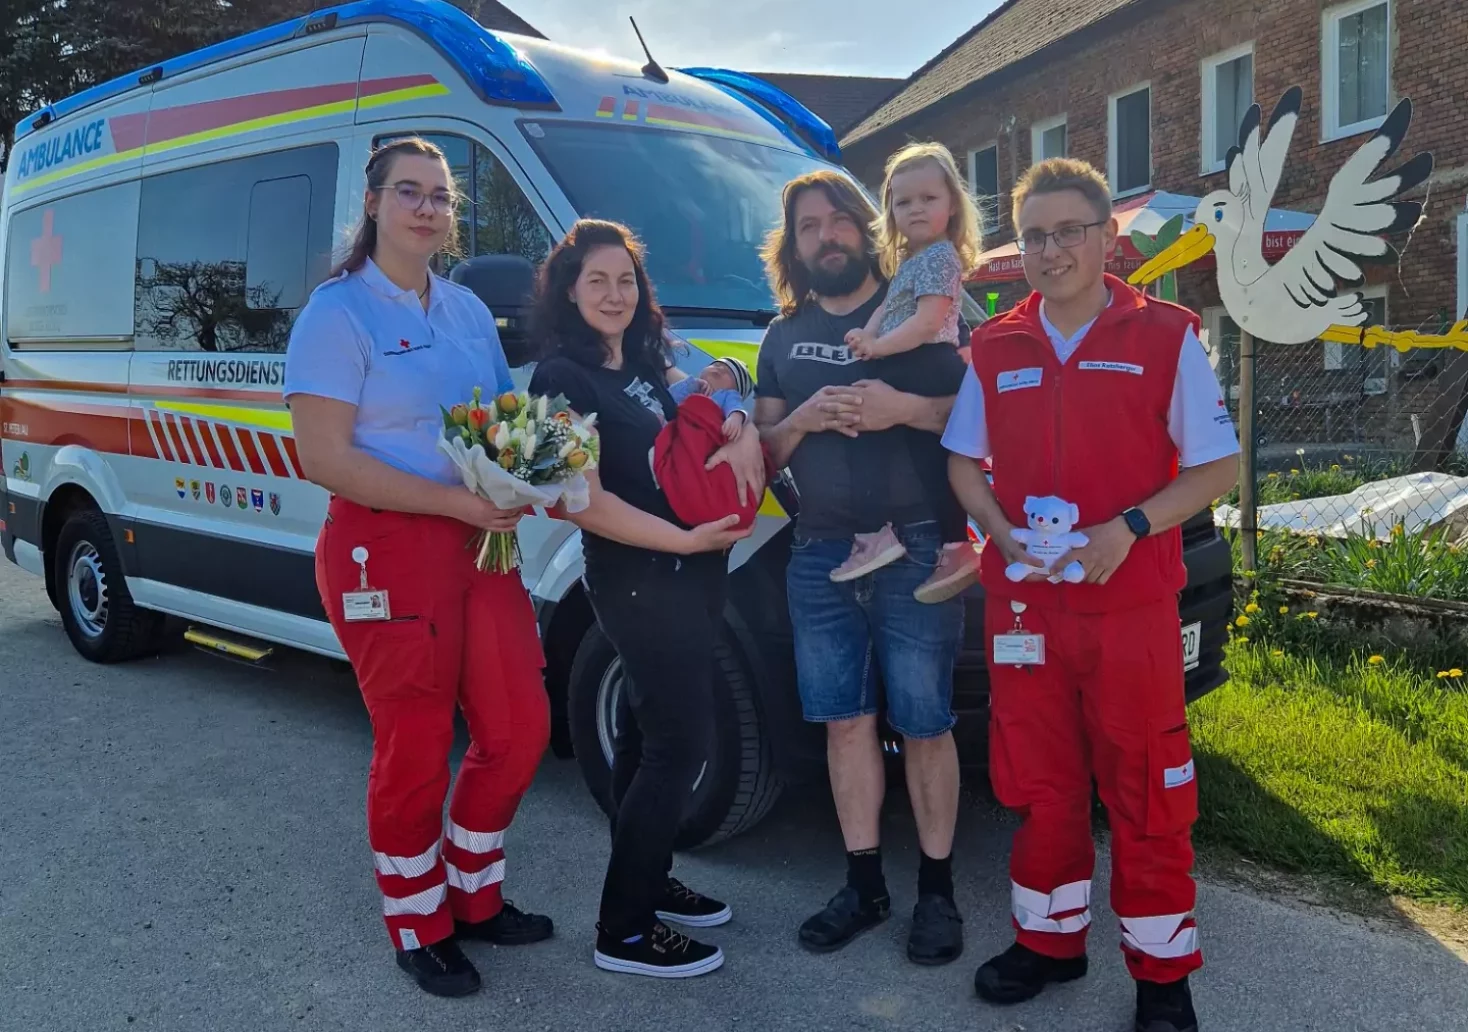 Foto in Beitrag von 5min.at: Zu sehen ist ein Rettungswagen und einige Menschen, die davor stehen, darunter die Familie des Neugeborenen und die Personen vom Roten Kreuz.